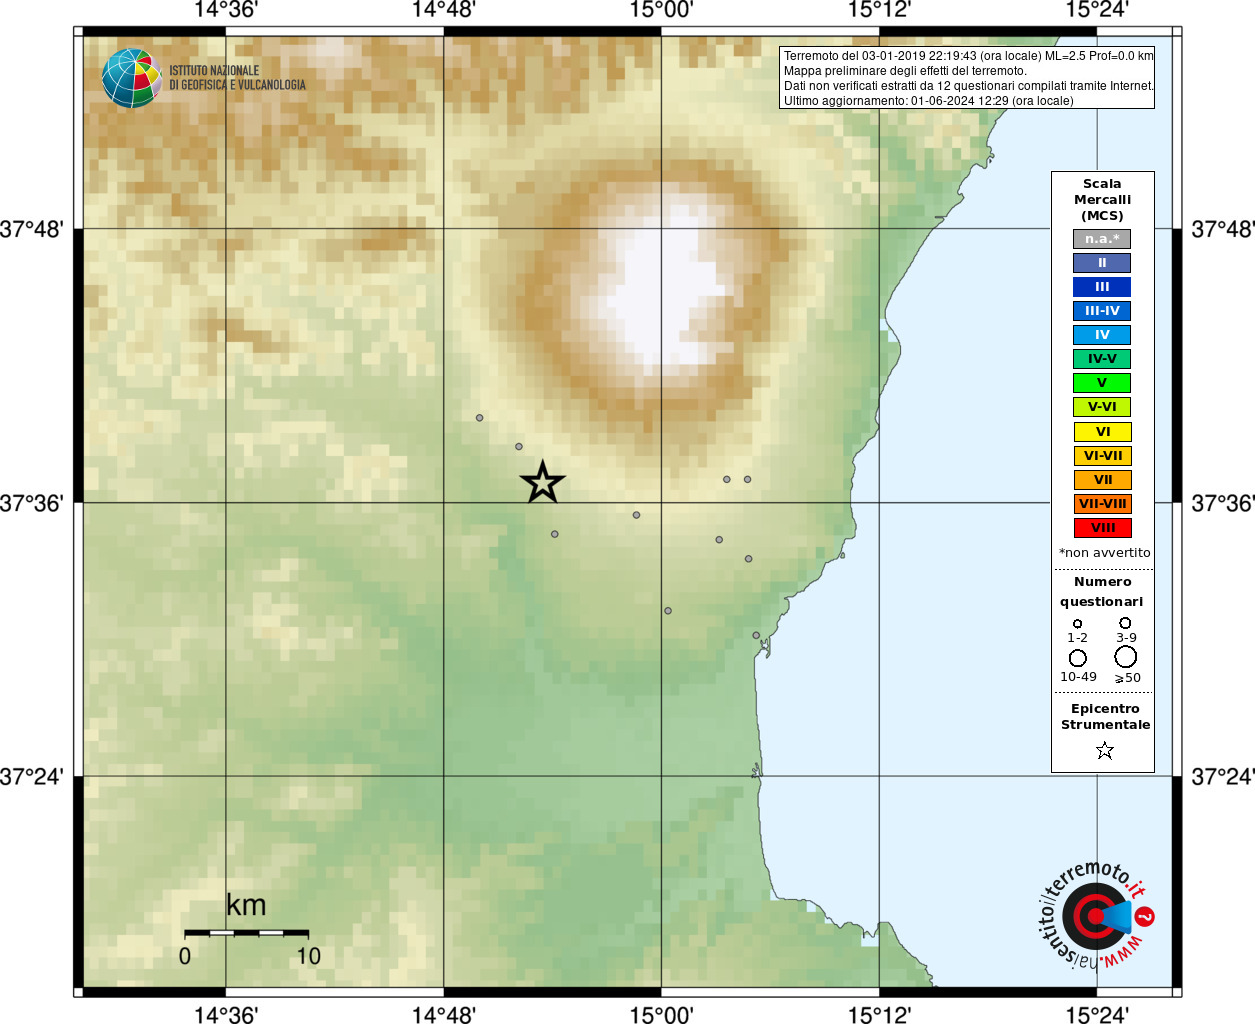 Earthquake Santa Maria di Licodia (CT), Magnitude ML 2.5, 3 January